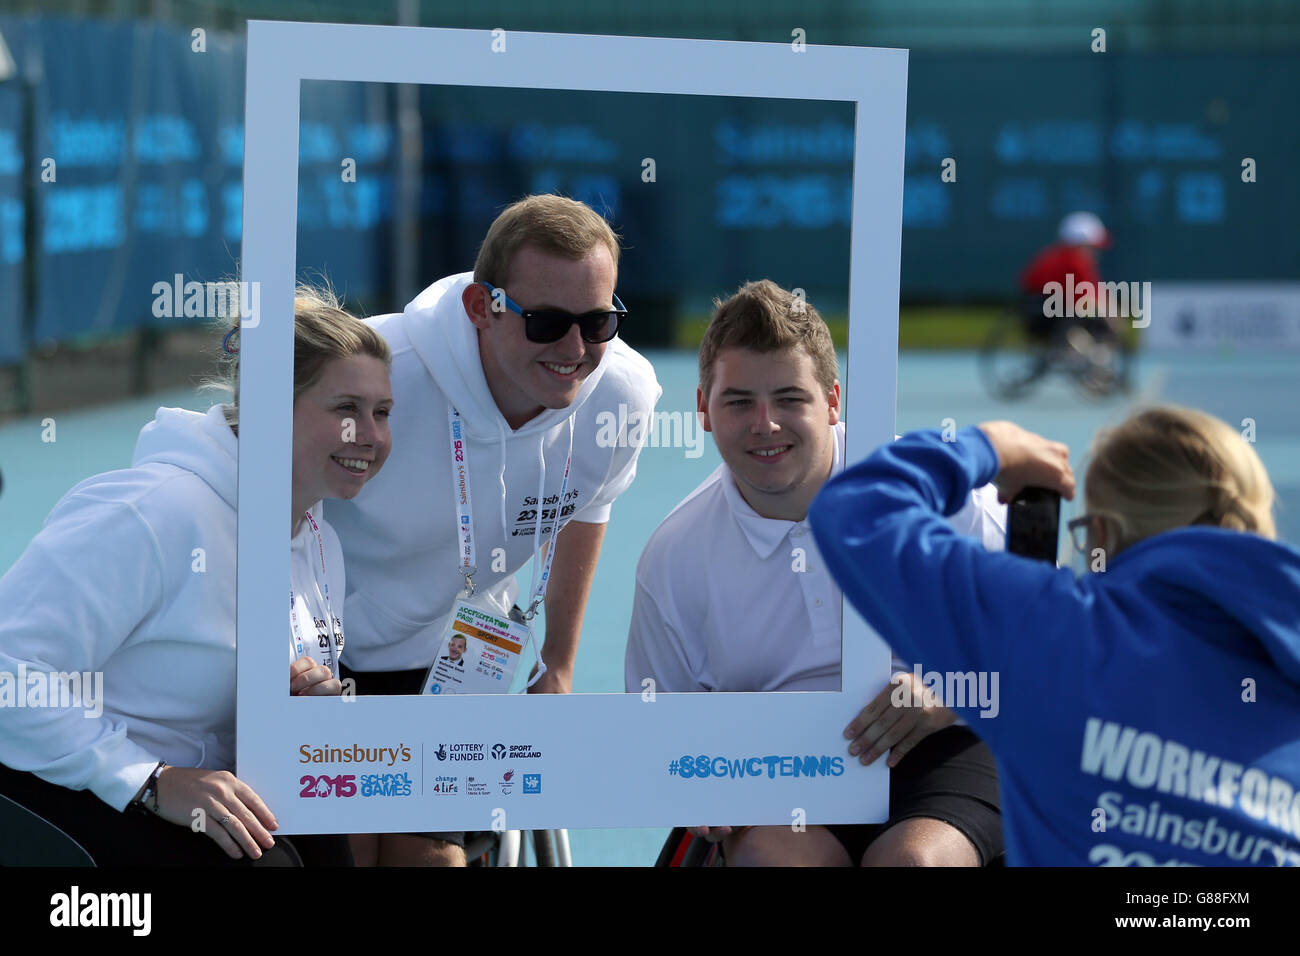 Les athlètes ont une photo prise à l'intérieur d'un cadre photo de marque pendant le tennis en fauteuil roulant aux Jeux scolaires de Sainsbury en 2015 au Centre régional de tennis de Manchester. Banque D'Images